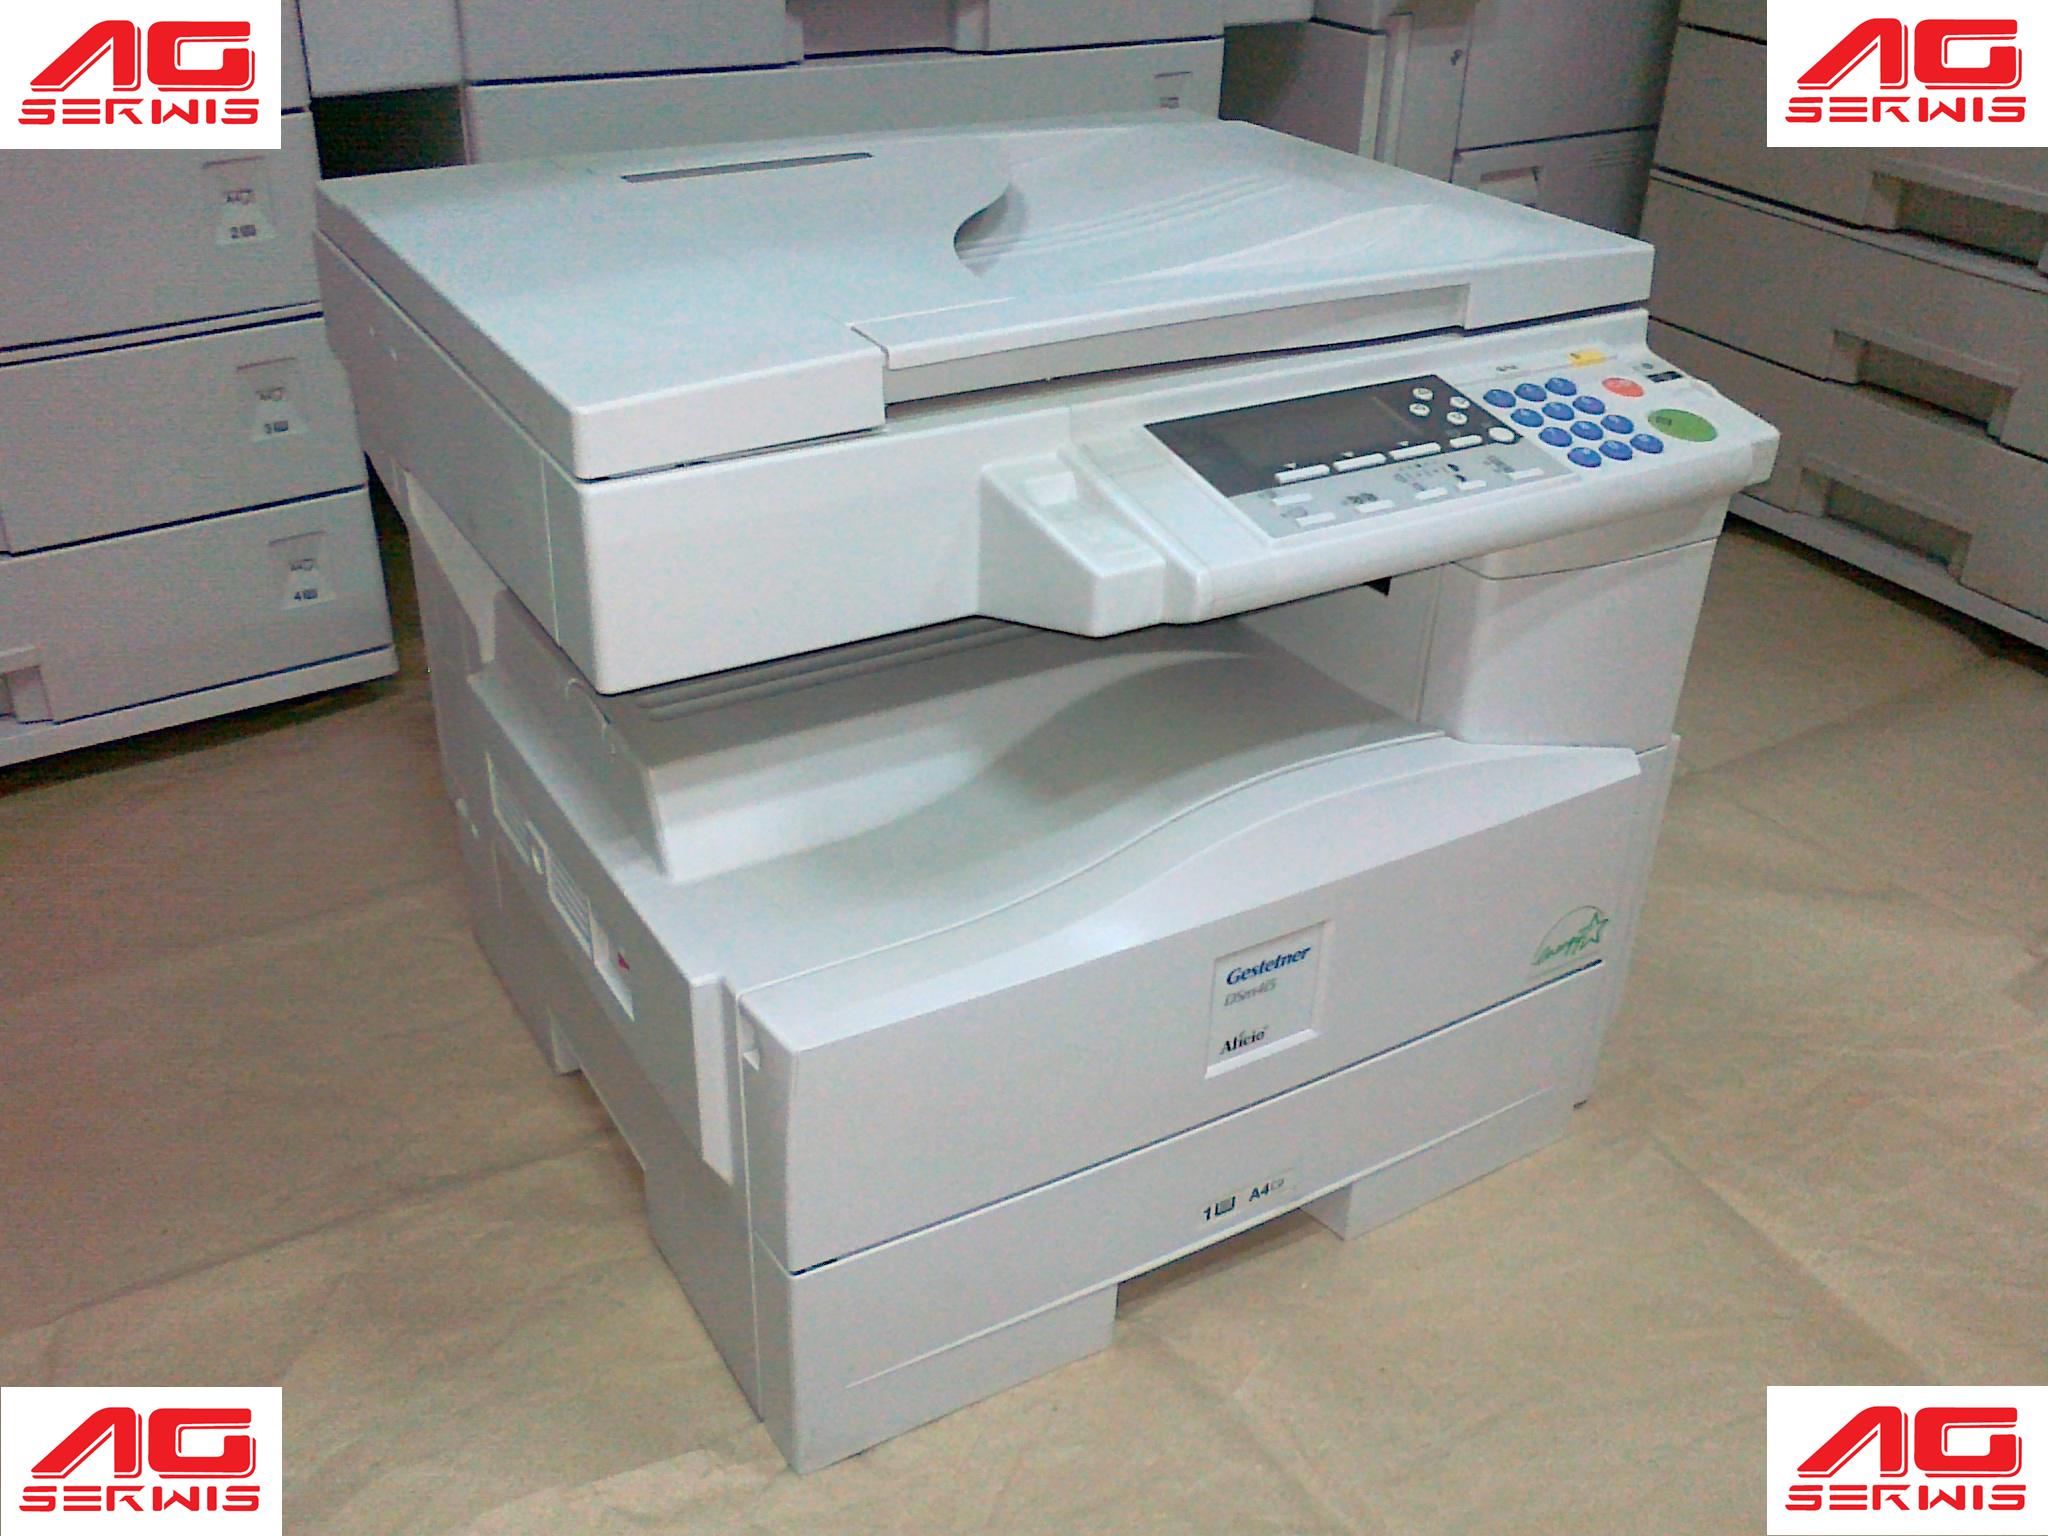 mala drukarka kopiarka skaner fax